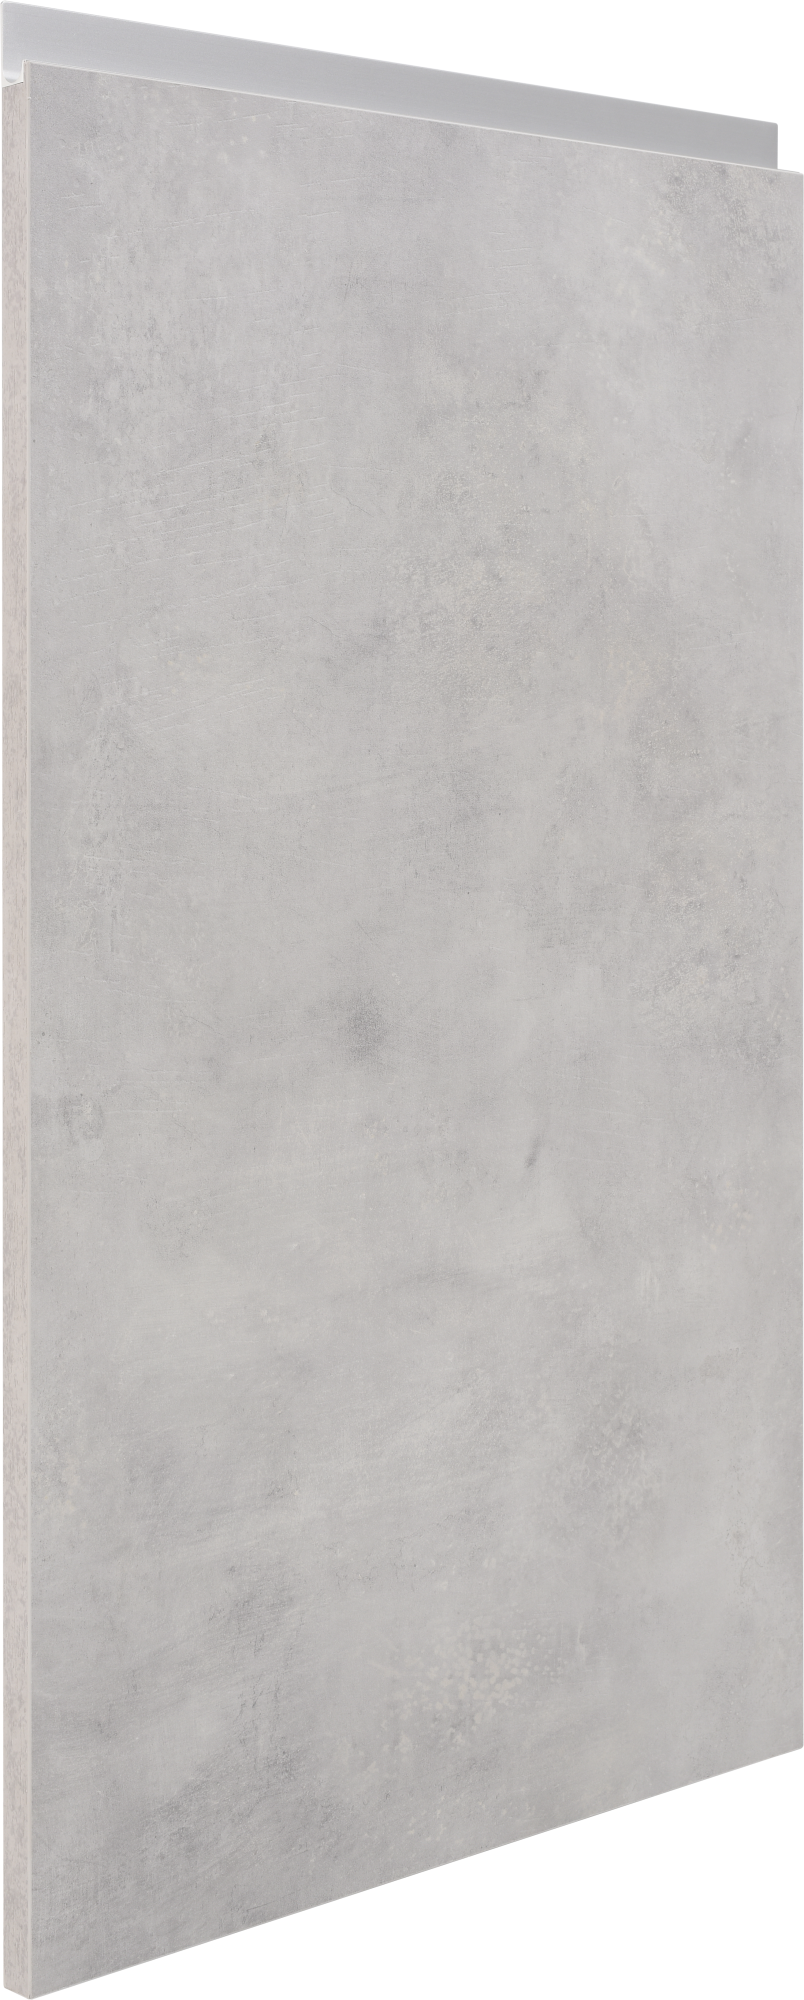 Puerta mueble de cocina mikonos cemento claro 44,7x76,5 cm